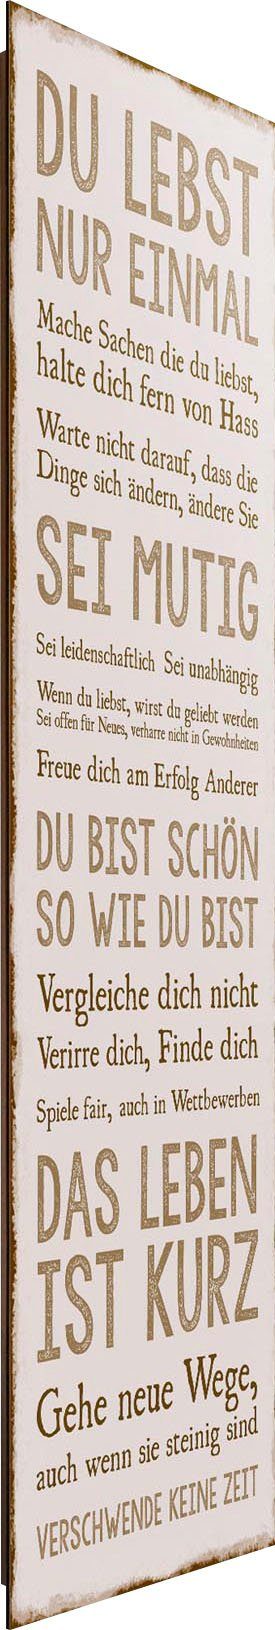 Reinders! 30x90 Leben, Deco-Panel cm Das Spruch